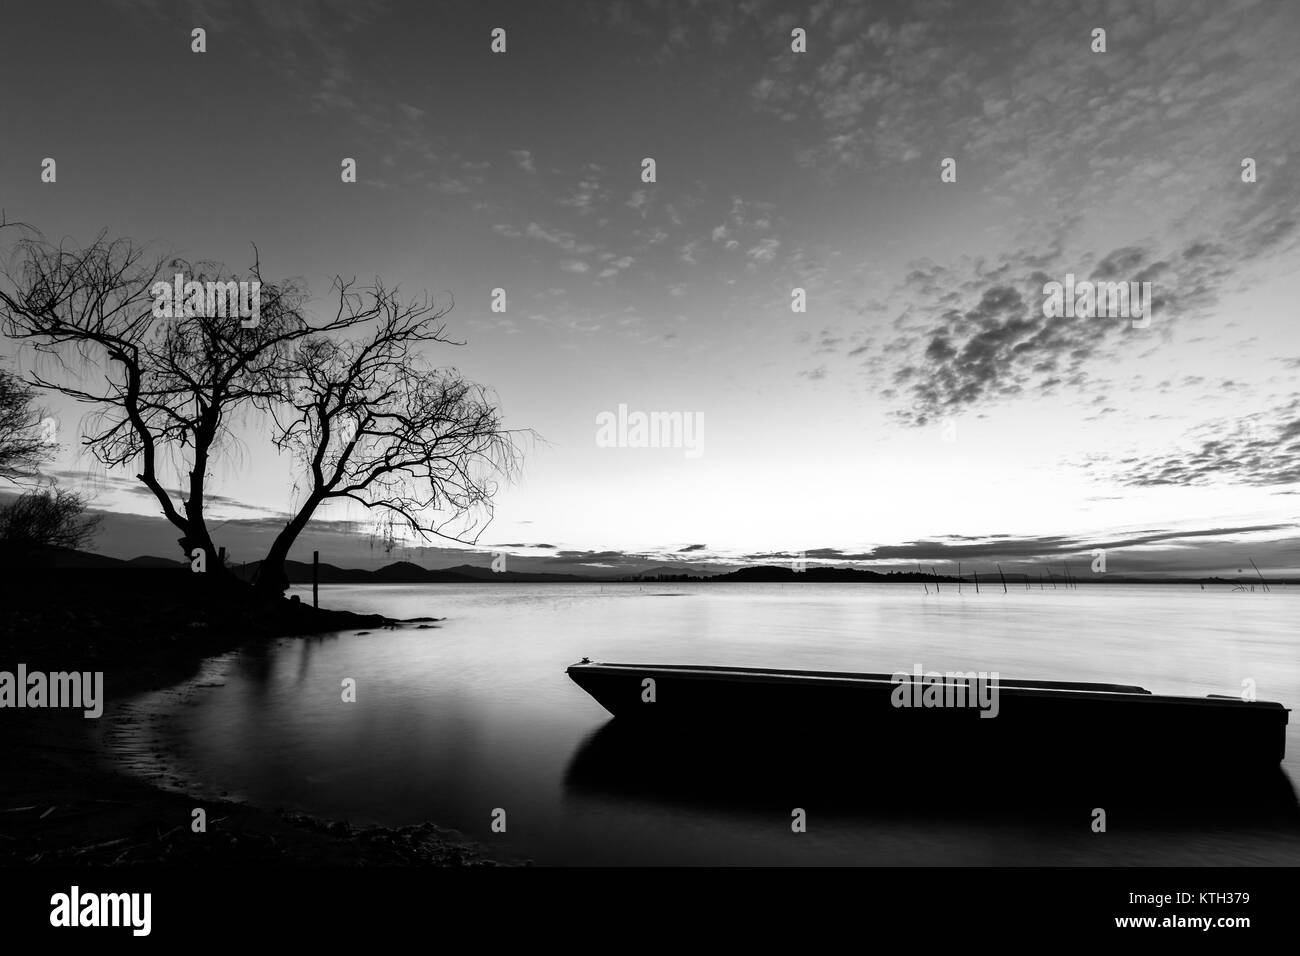 Schönen Blick auf den Trasimenischen See (Umbrien) in der Dämmerung, mit einem kleinen Boot Silhouette in den Vordergrund, perfekt noch Wasser und ein Baum im Hintergrund Stockfoto